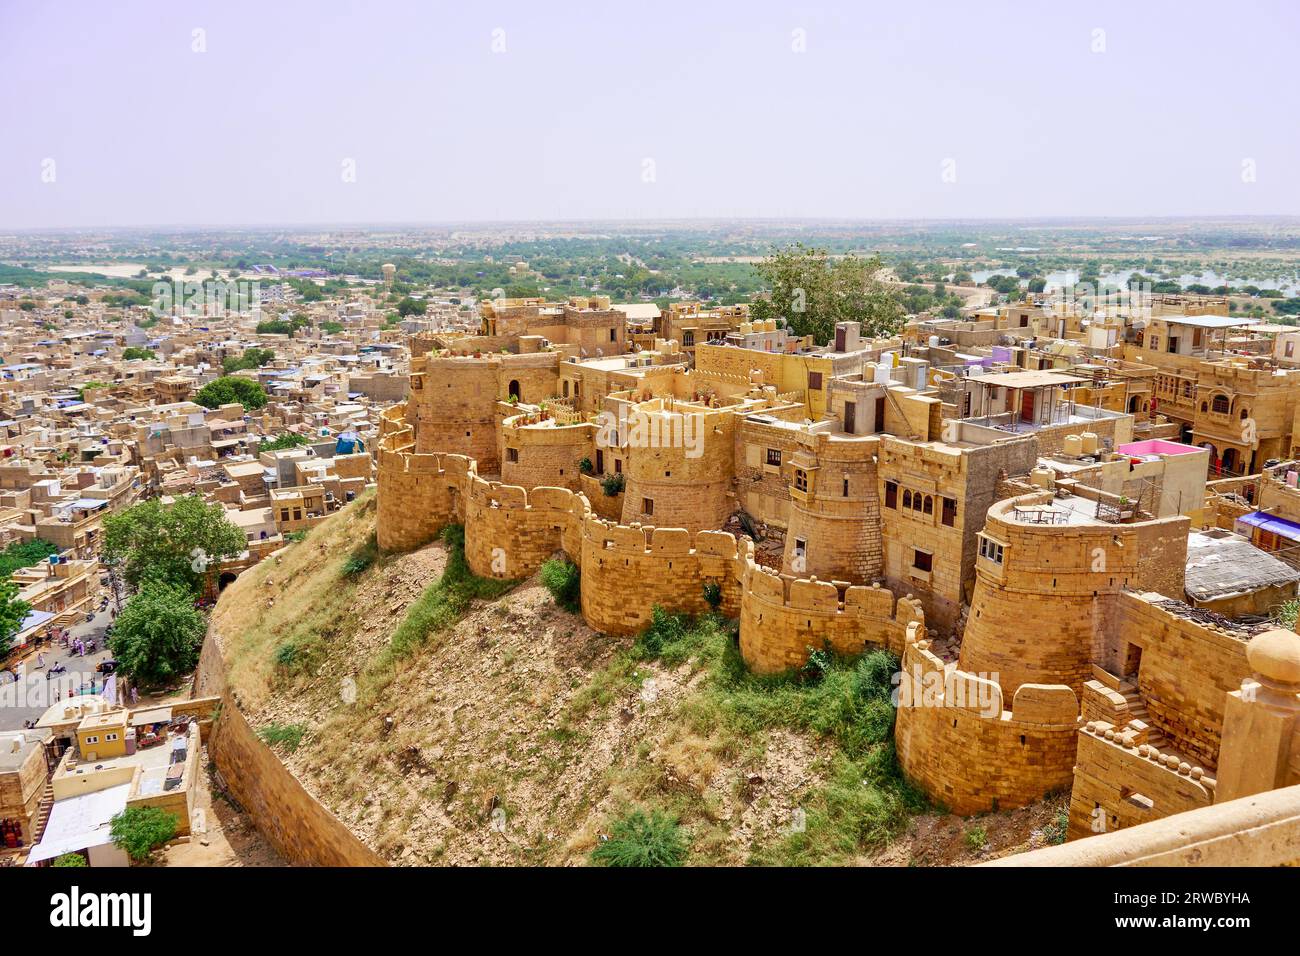 Jaisalmer Fort overlooking the city of Jaisalmer Stock Photo